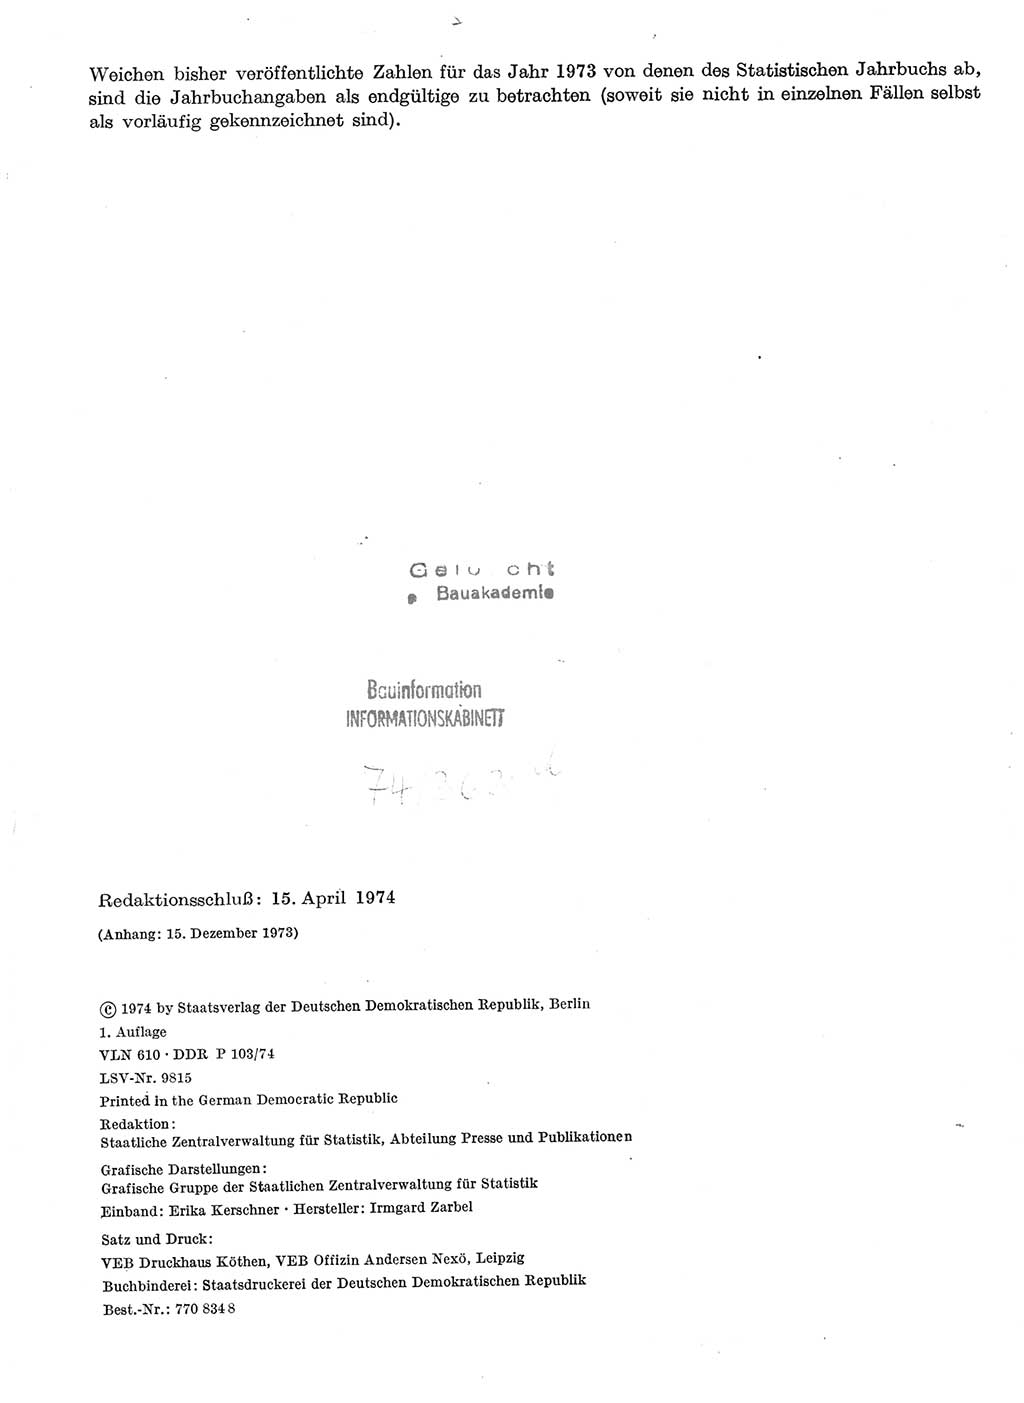 Statistisches Jahrbuch der Deutschen Demokratischen Republik (DDR) 1974, Seite 2 (Stat. Jb. DDR 1974, S. 2)